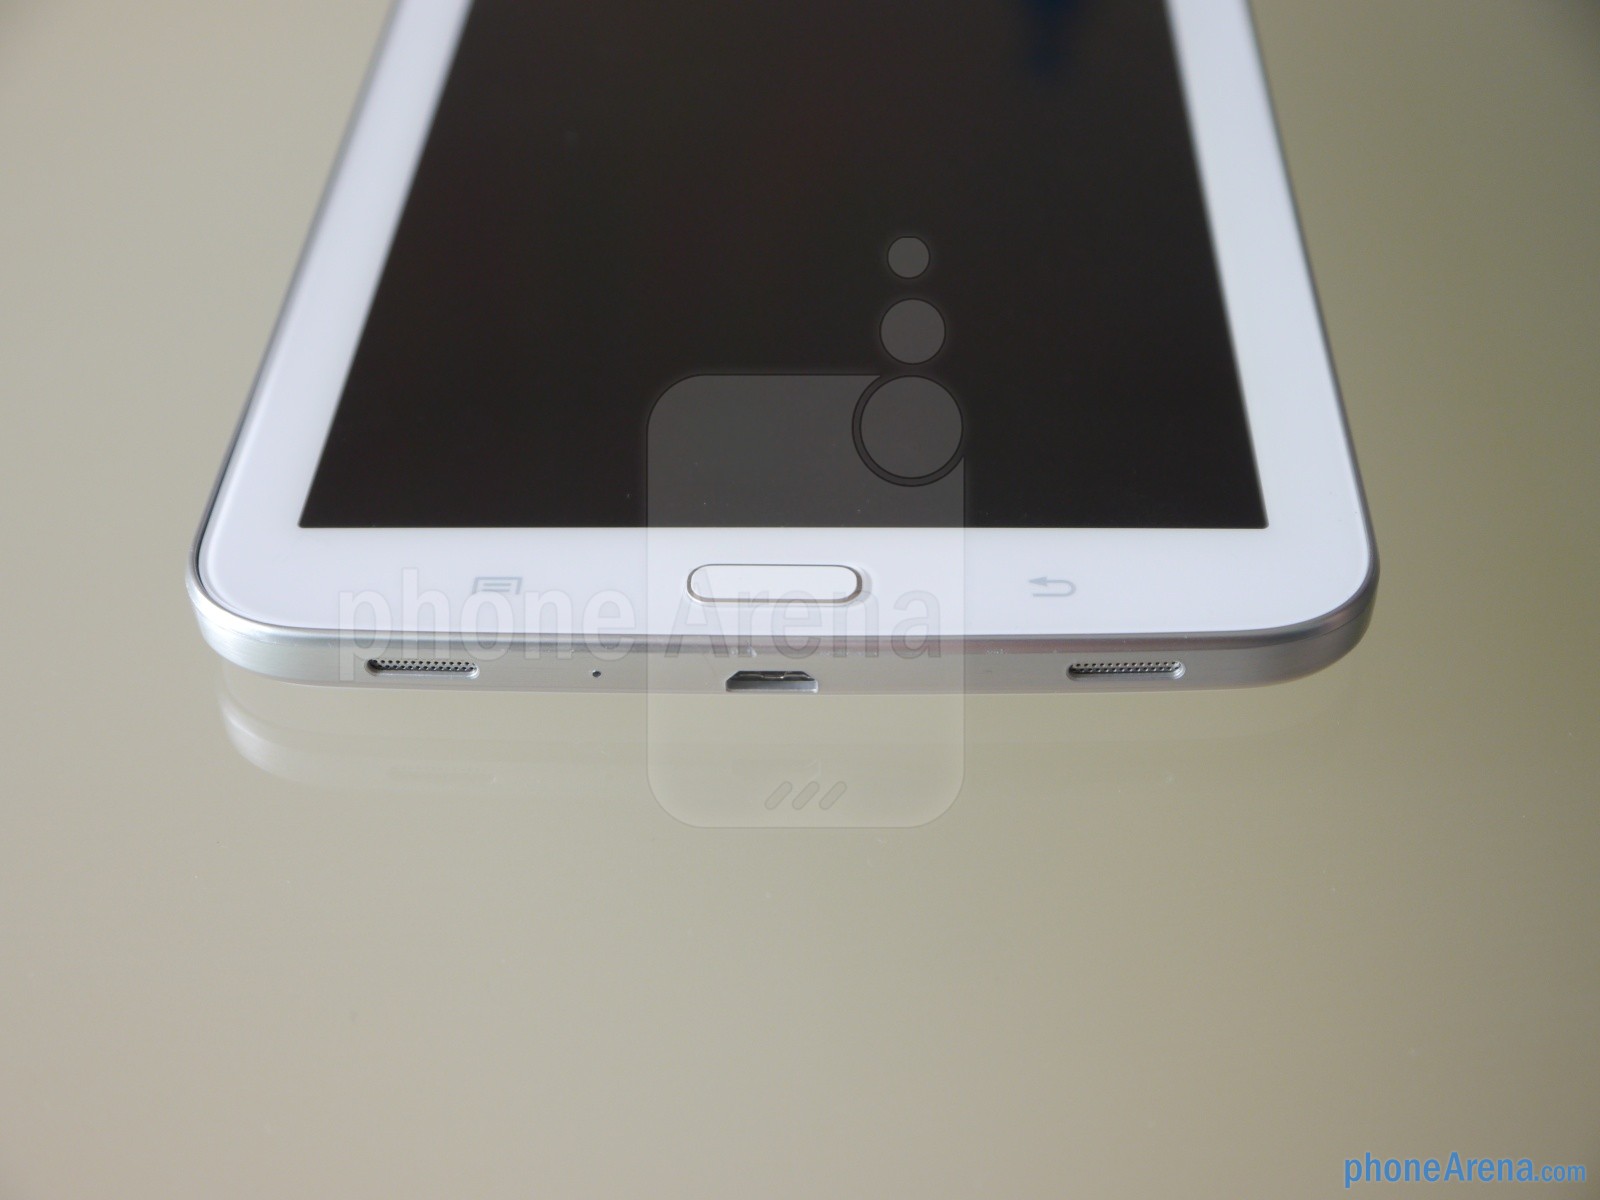 Samsung-Galaxy-Tab-3-7-inch-images (1)